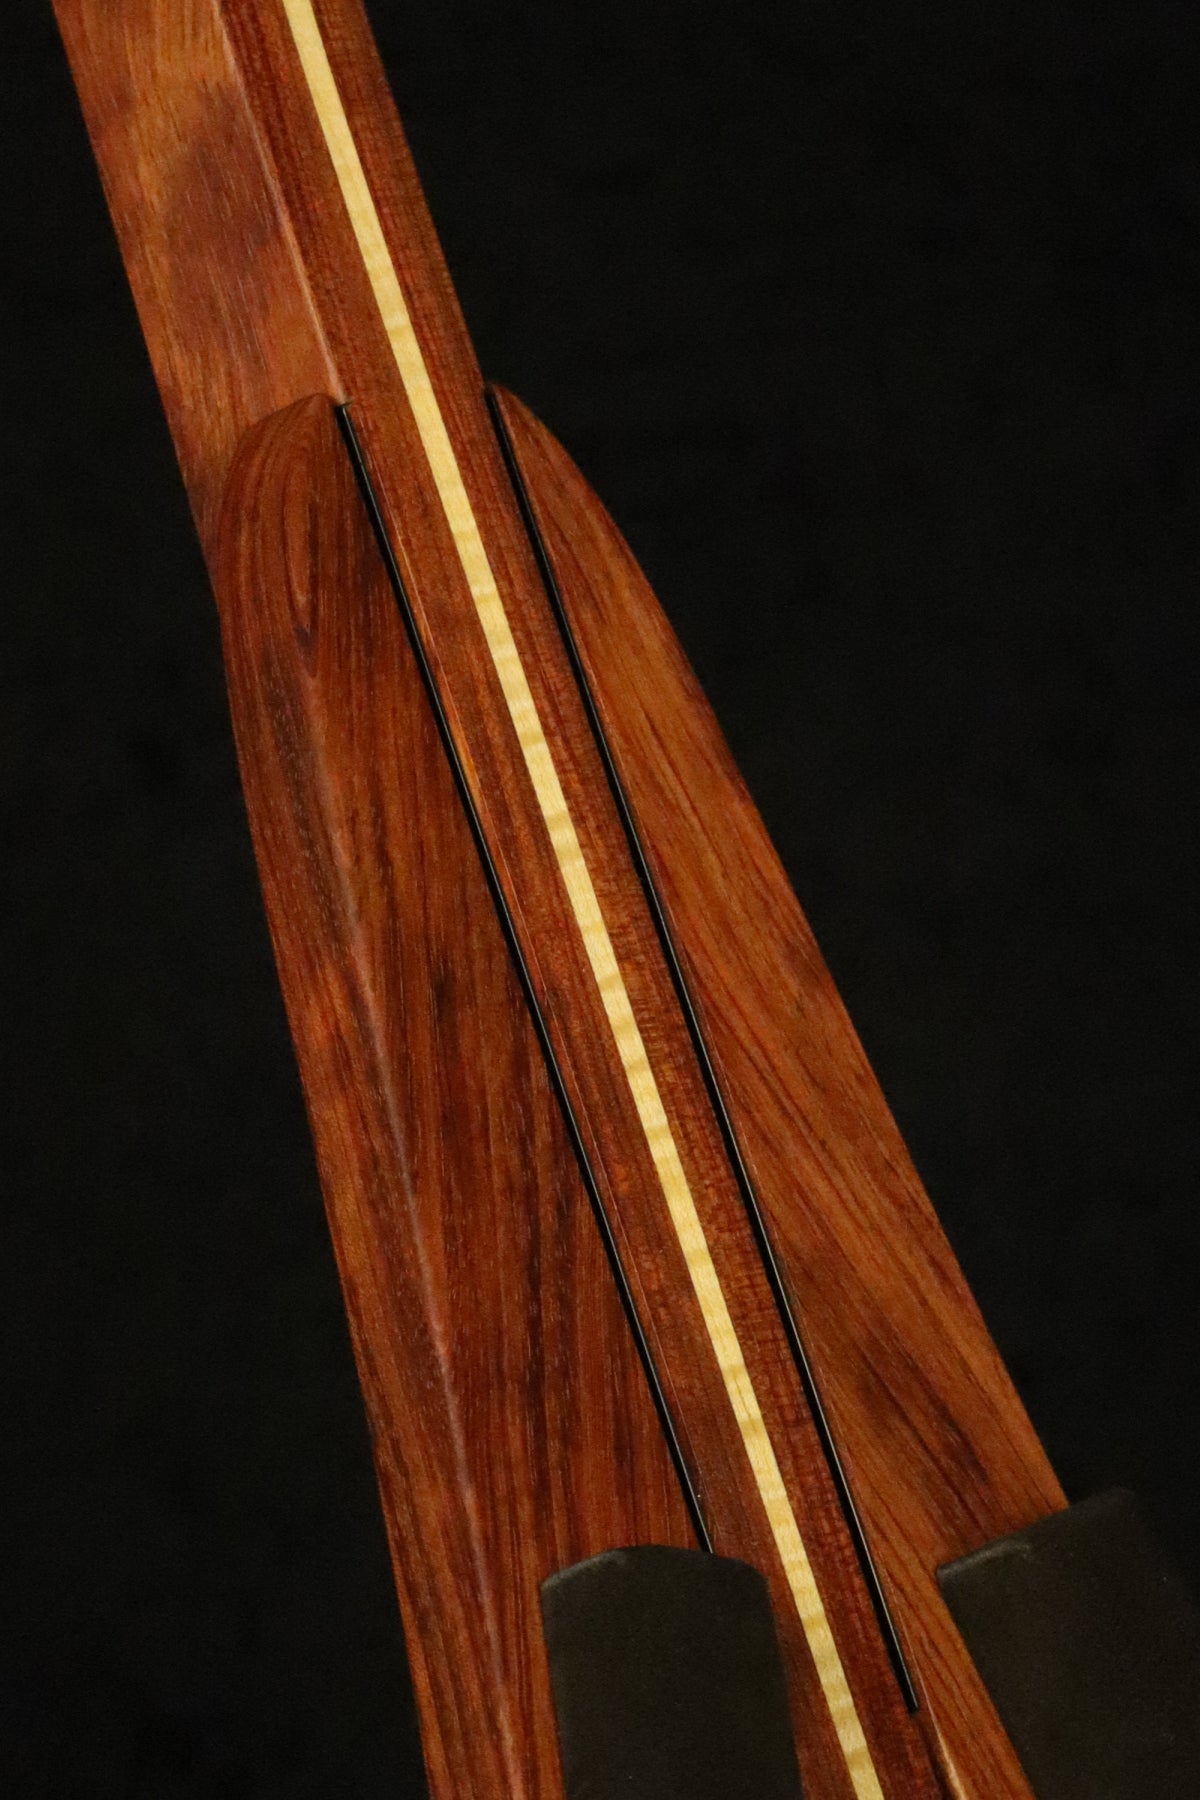 Folding bubinga rosewood and curly maple wood ukulele floor stand closeup front image